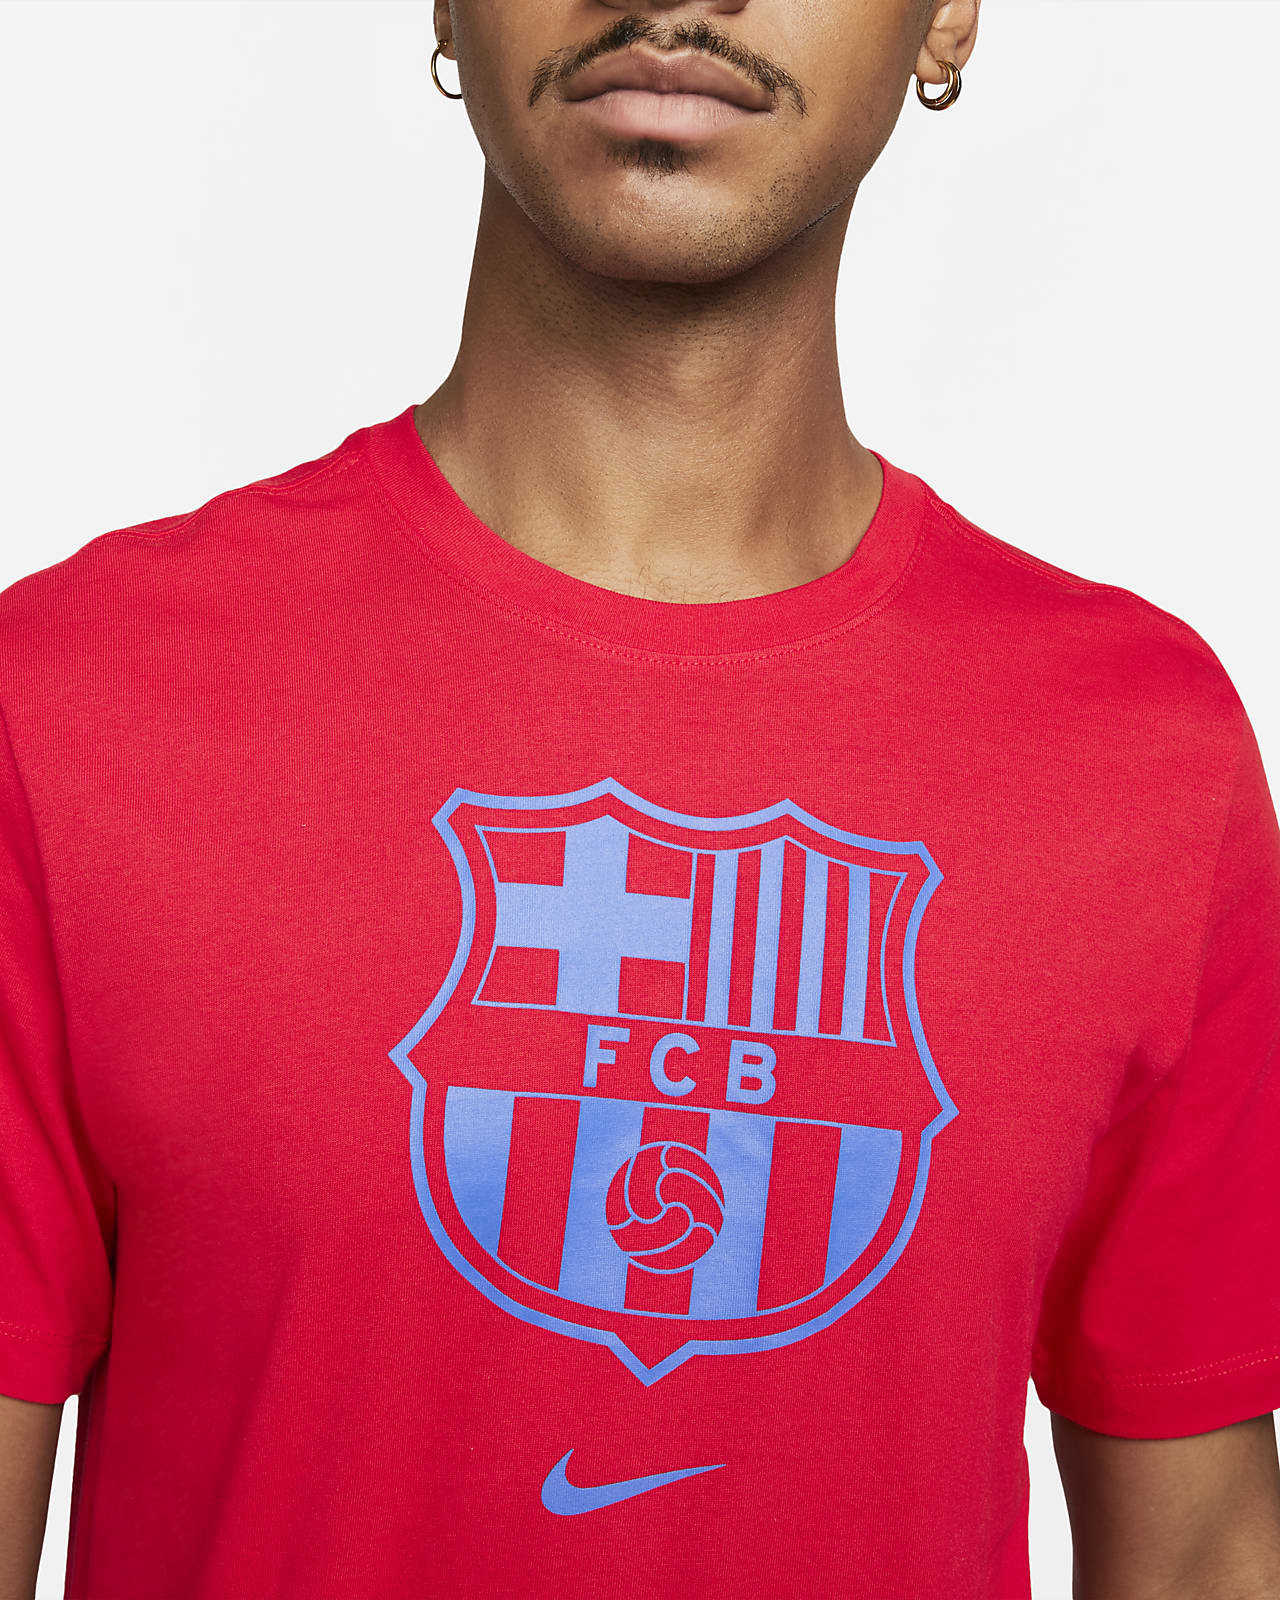 FC Crest Soccer T-Shirt.